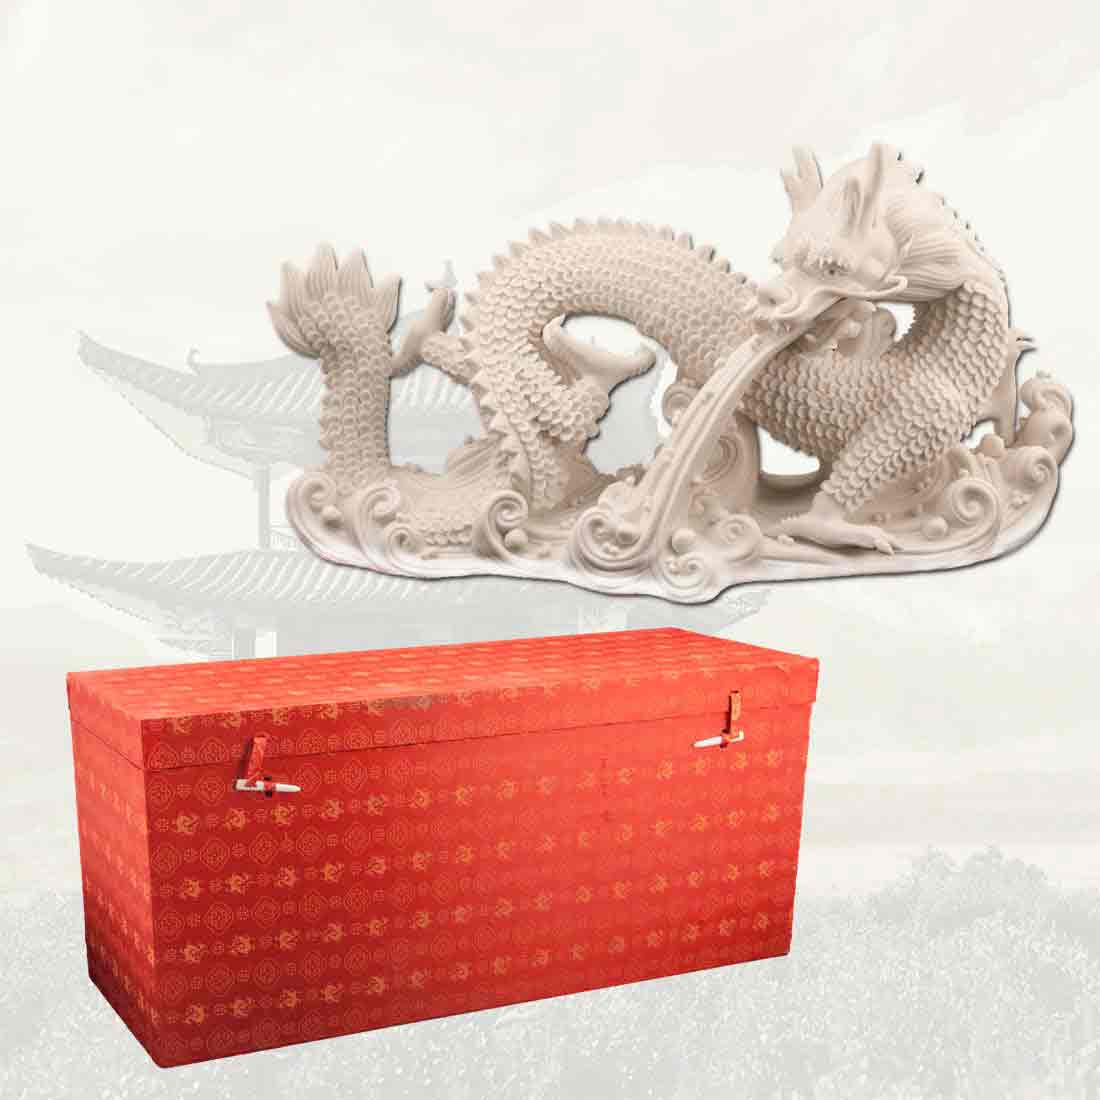 Статуэтка, фарфоровая "Дракон" - символ императорской власти в интернет-студии декора / шоурум | ChinaHouse.studio